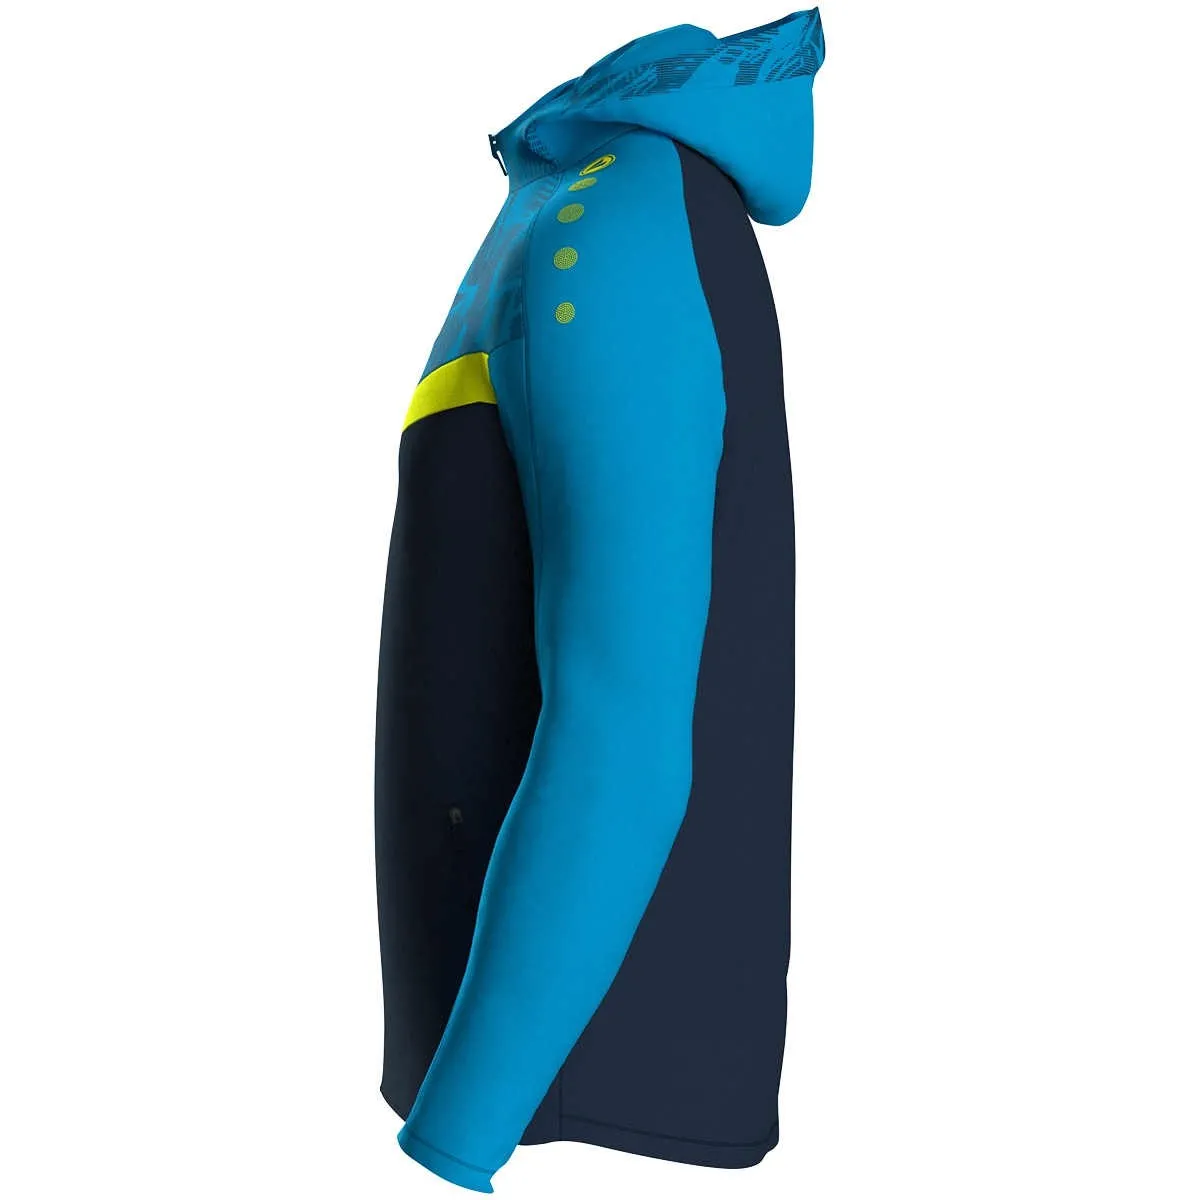 JAKO hooded jacket Iconic navy/JAKO blue/neon yellow